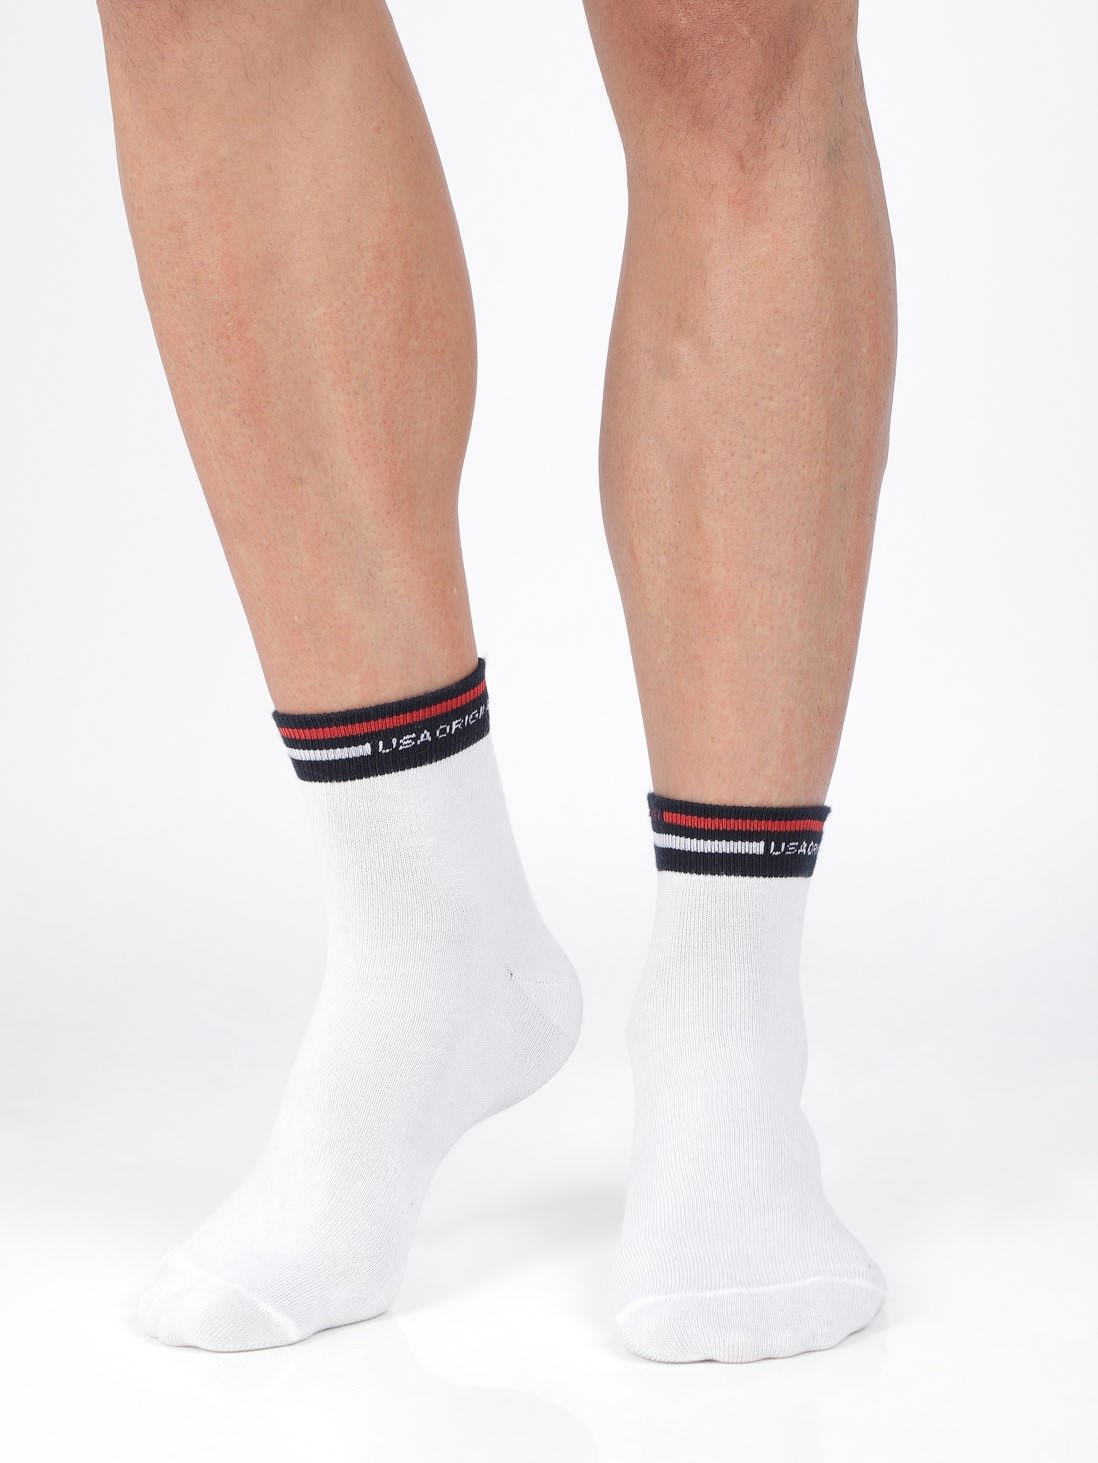 White Solid Ankle Socks for Men 7002 | Jockey India